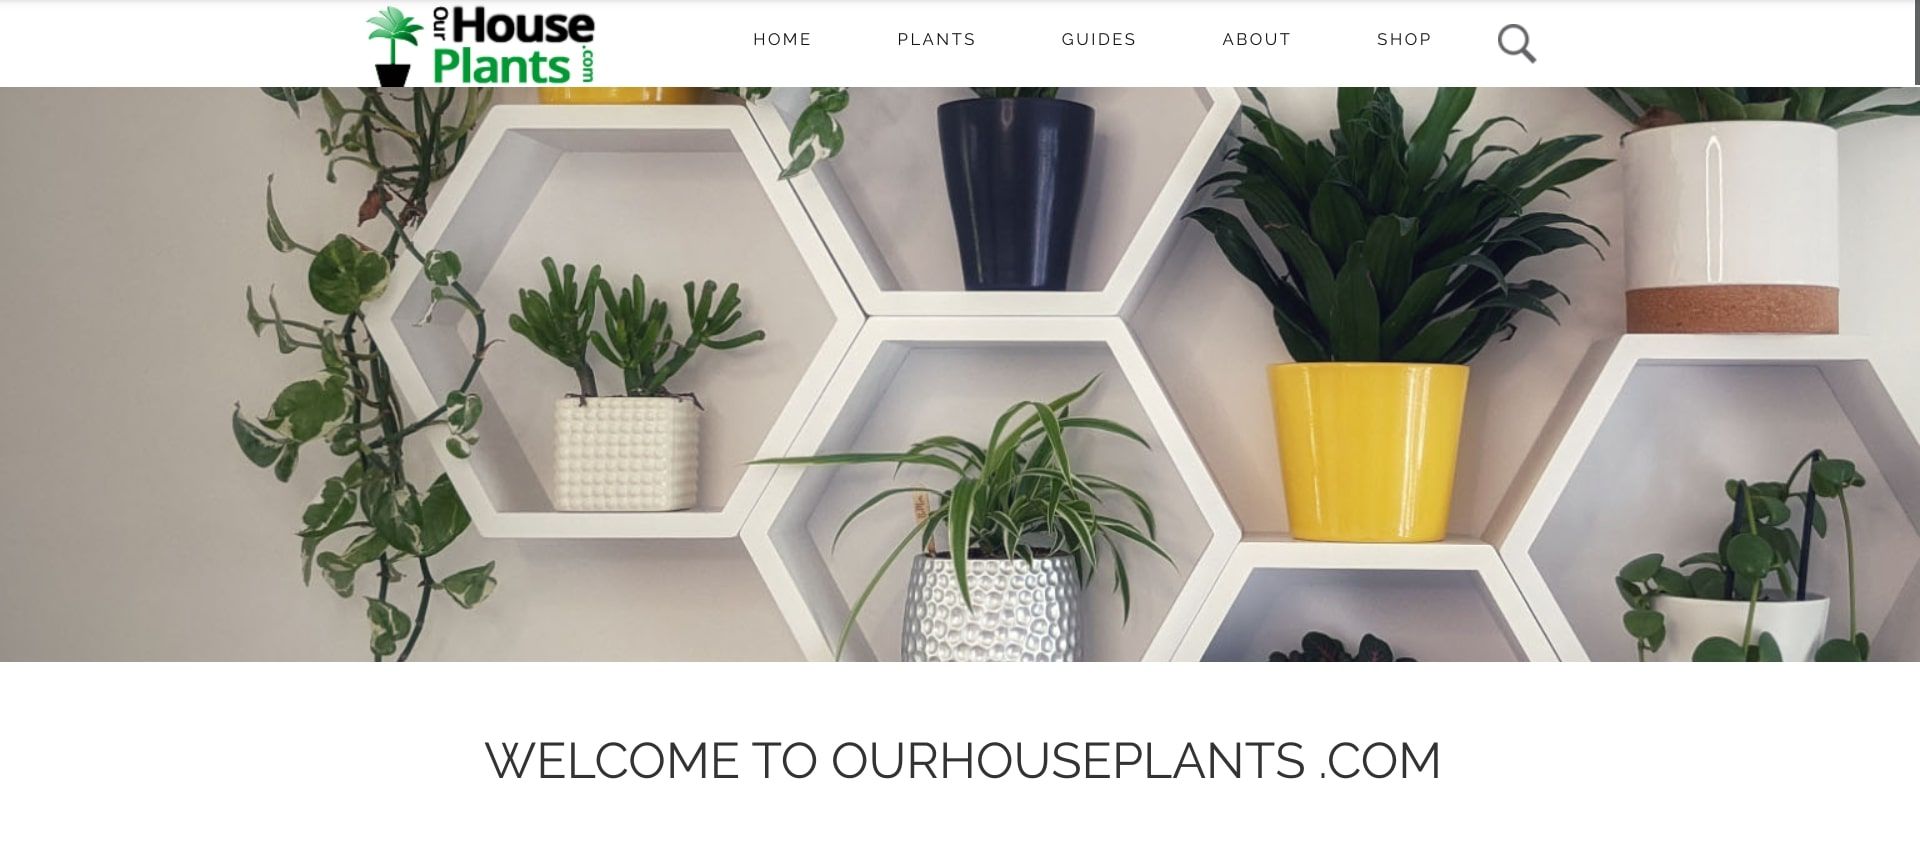 ourhouseplants scrnsht - 5 siti che possono aiutarti con la cura delle piante d’appartamento